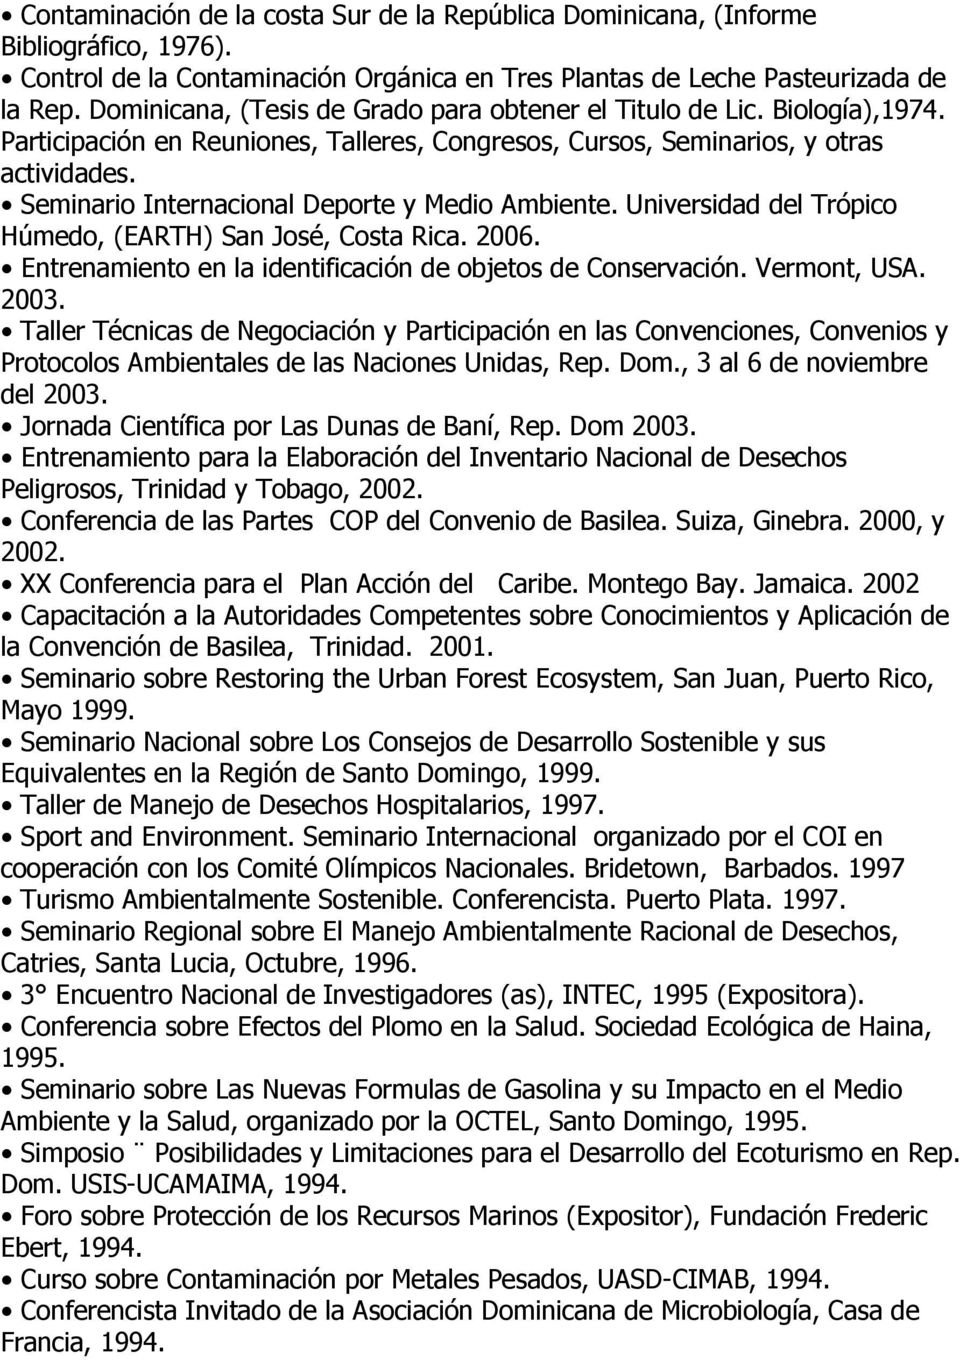 Seminario Internacional Deporte y Medio Ambiente. Universidad del Trópico Húmedo, (EARTH) San José, Costa Rica. 2006. Entrenamiento en la identificación de objetos de Conservación. Vermont, USA. 2003.